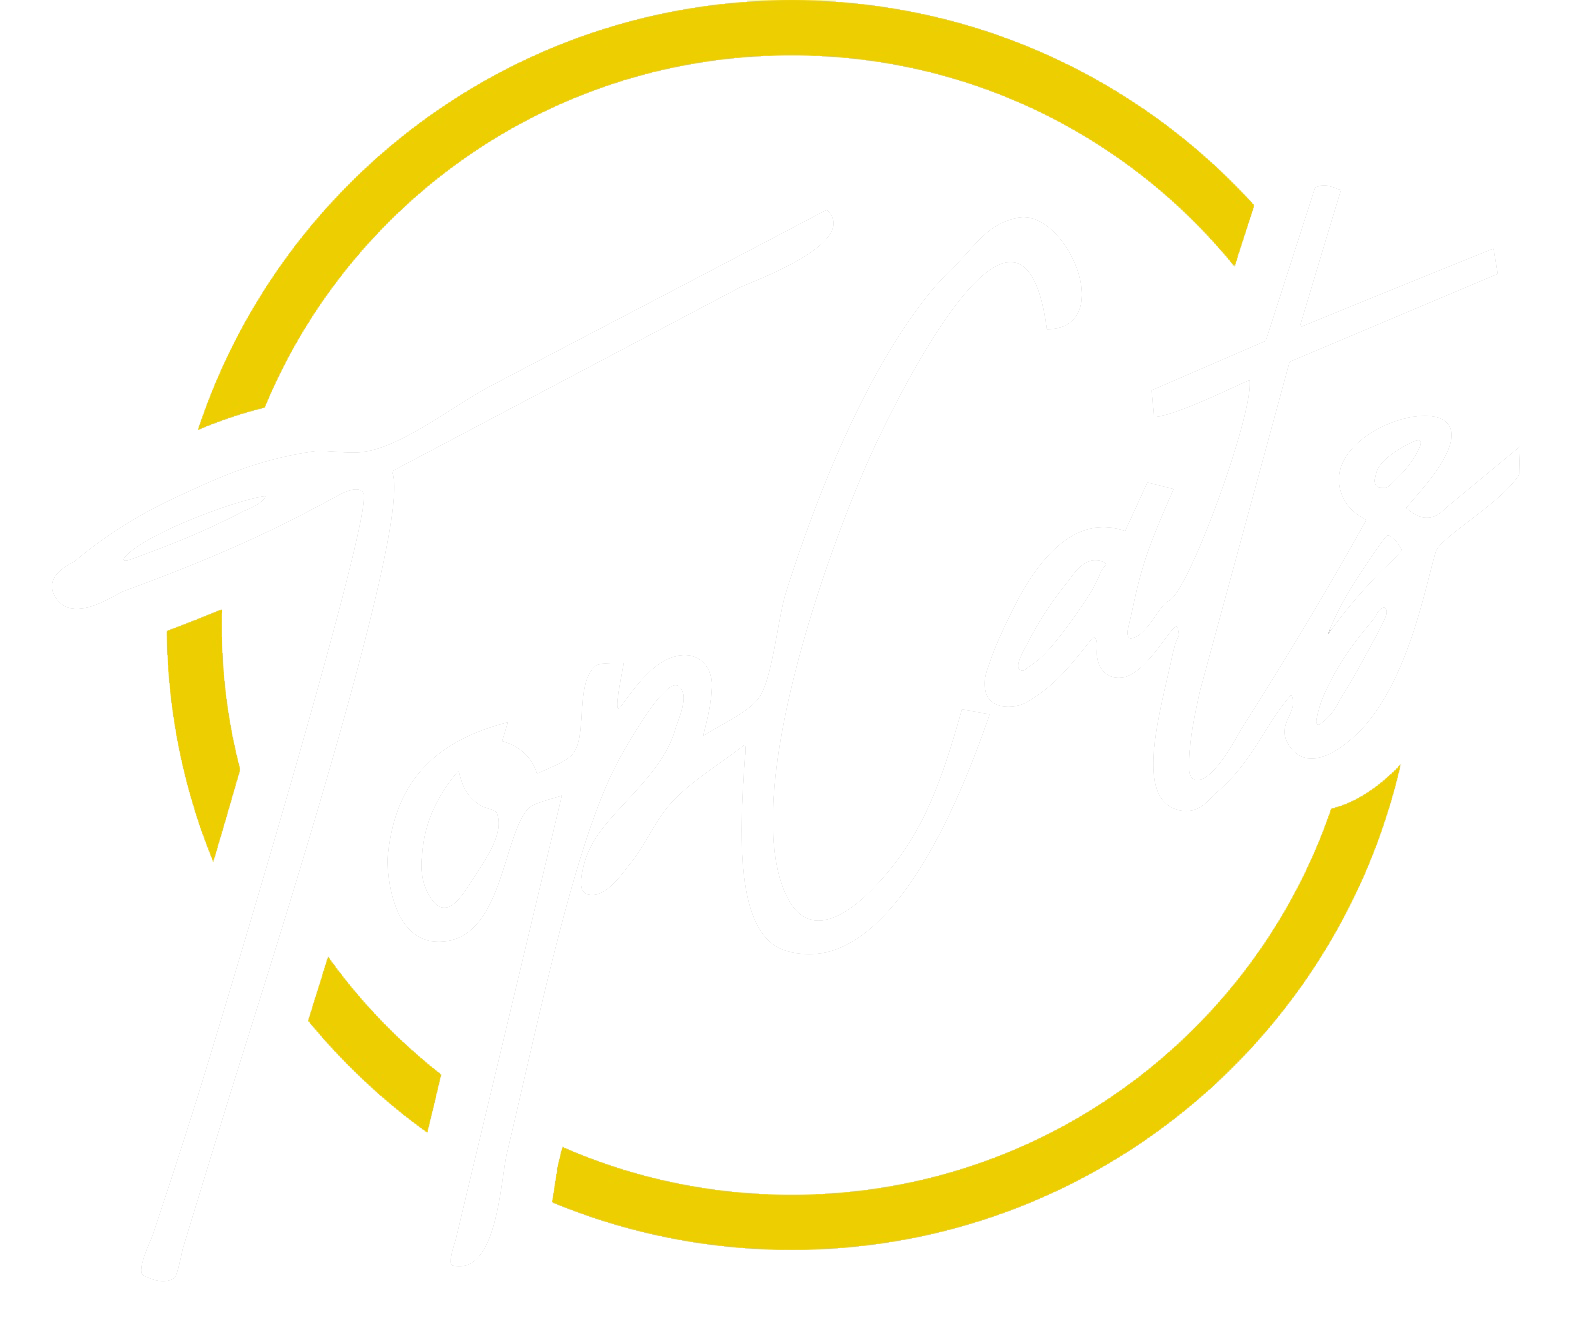 Top Cats Cincy logo